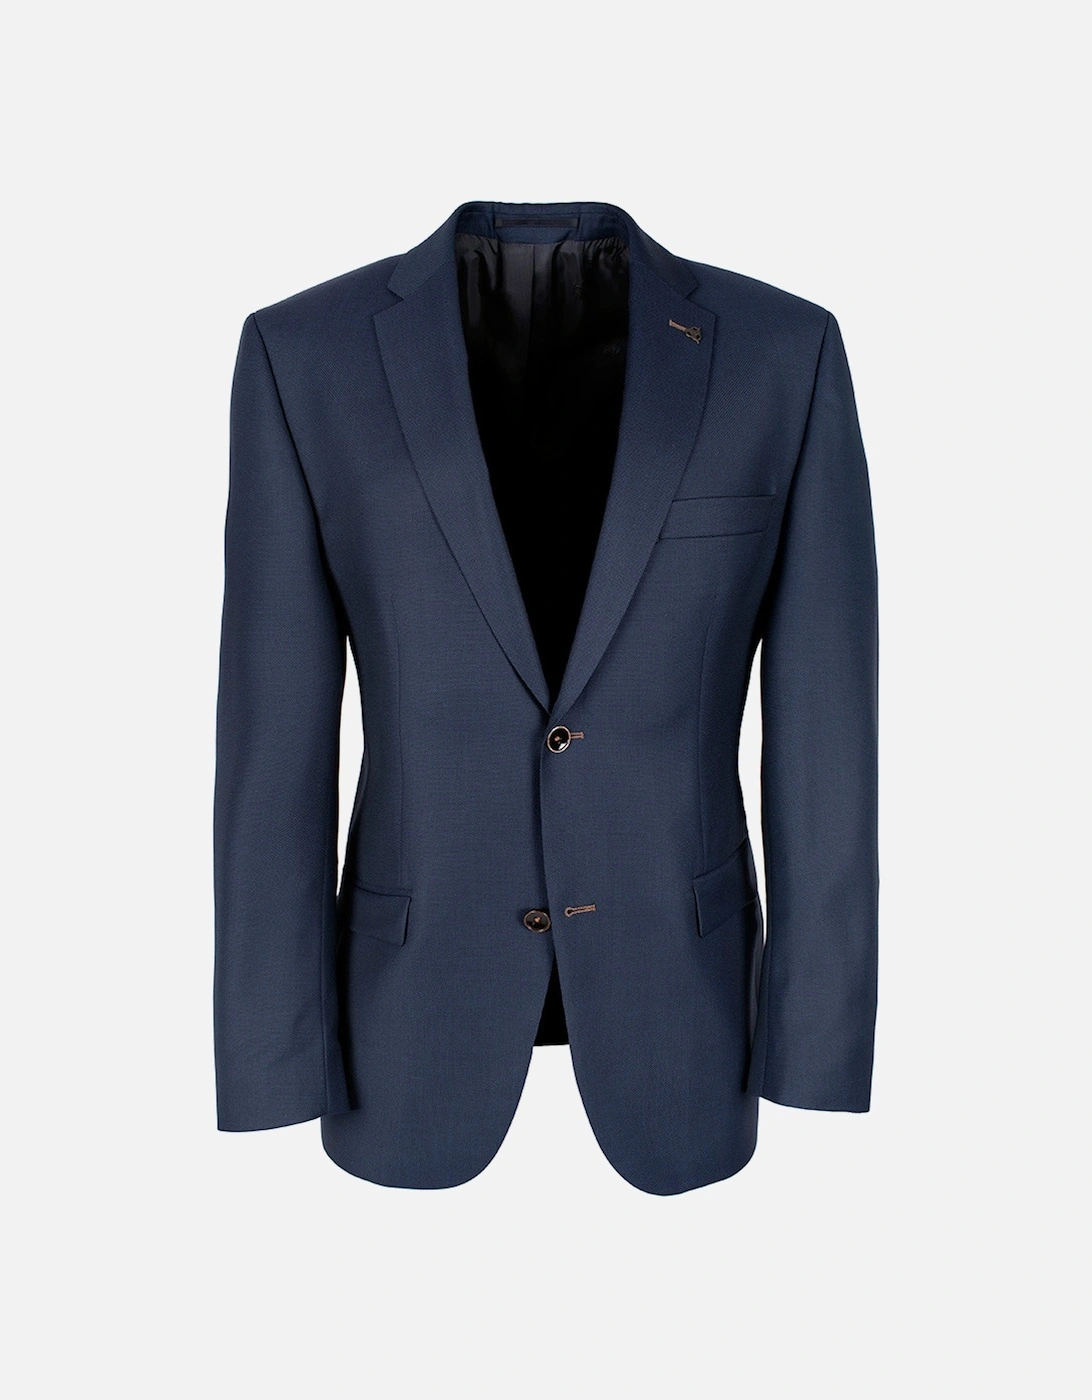 Mens Suit Jacket (Blue), 8 of 7